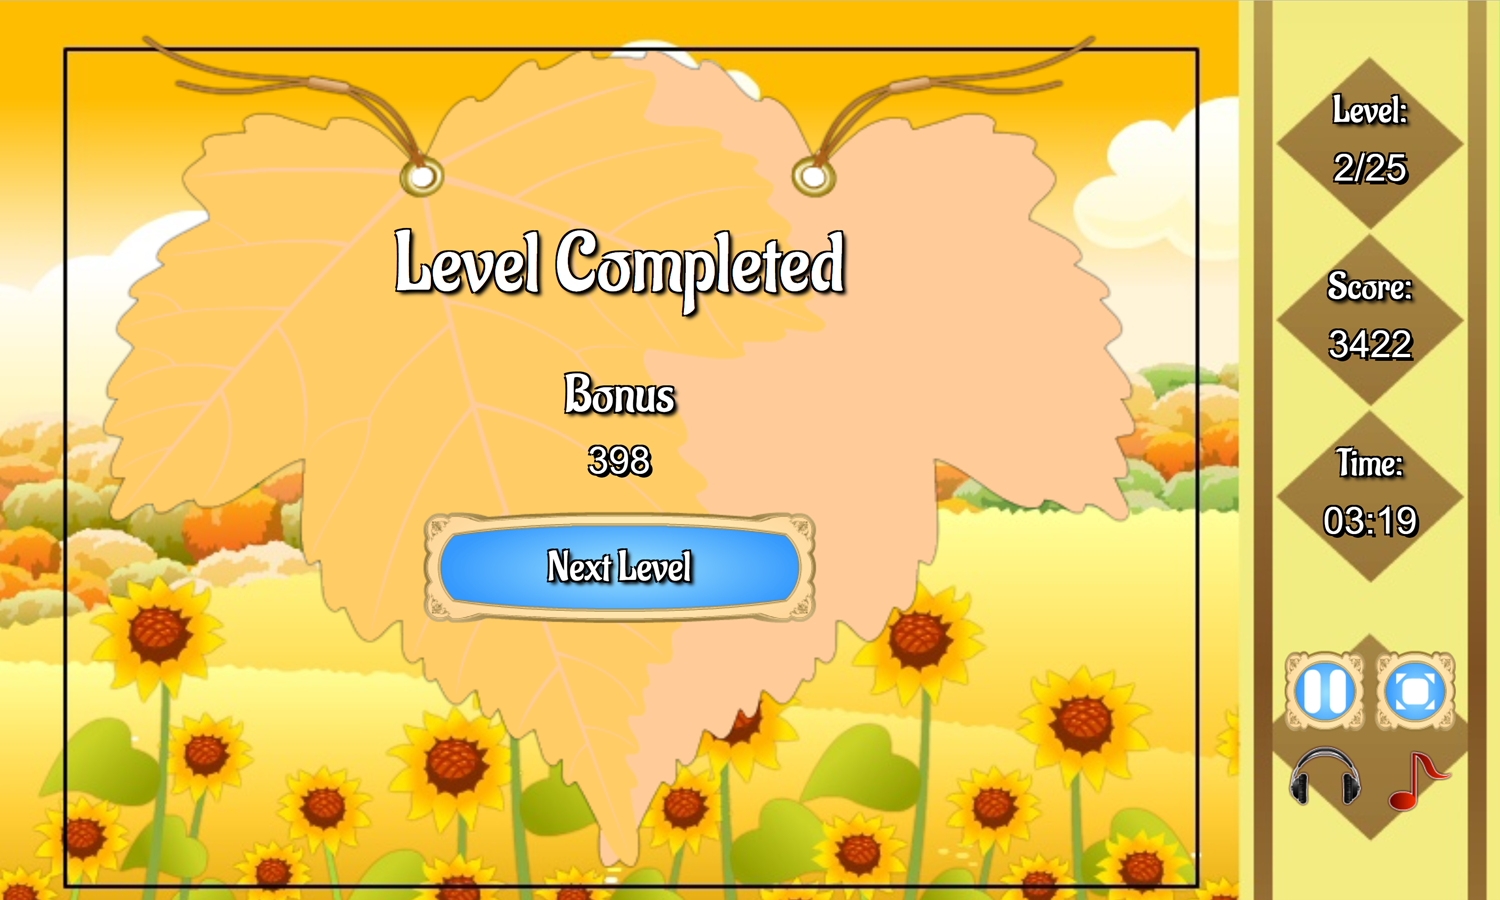 Golden Autumn Mahjong Game Level Complete Screen Screenshot.